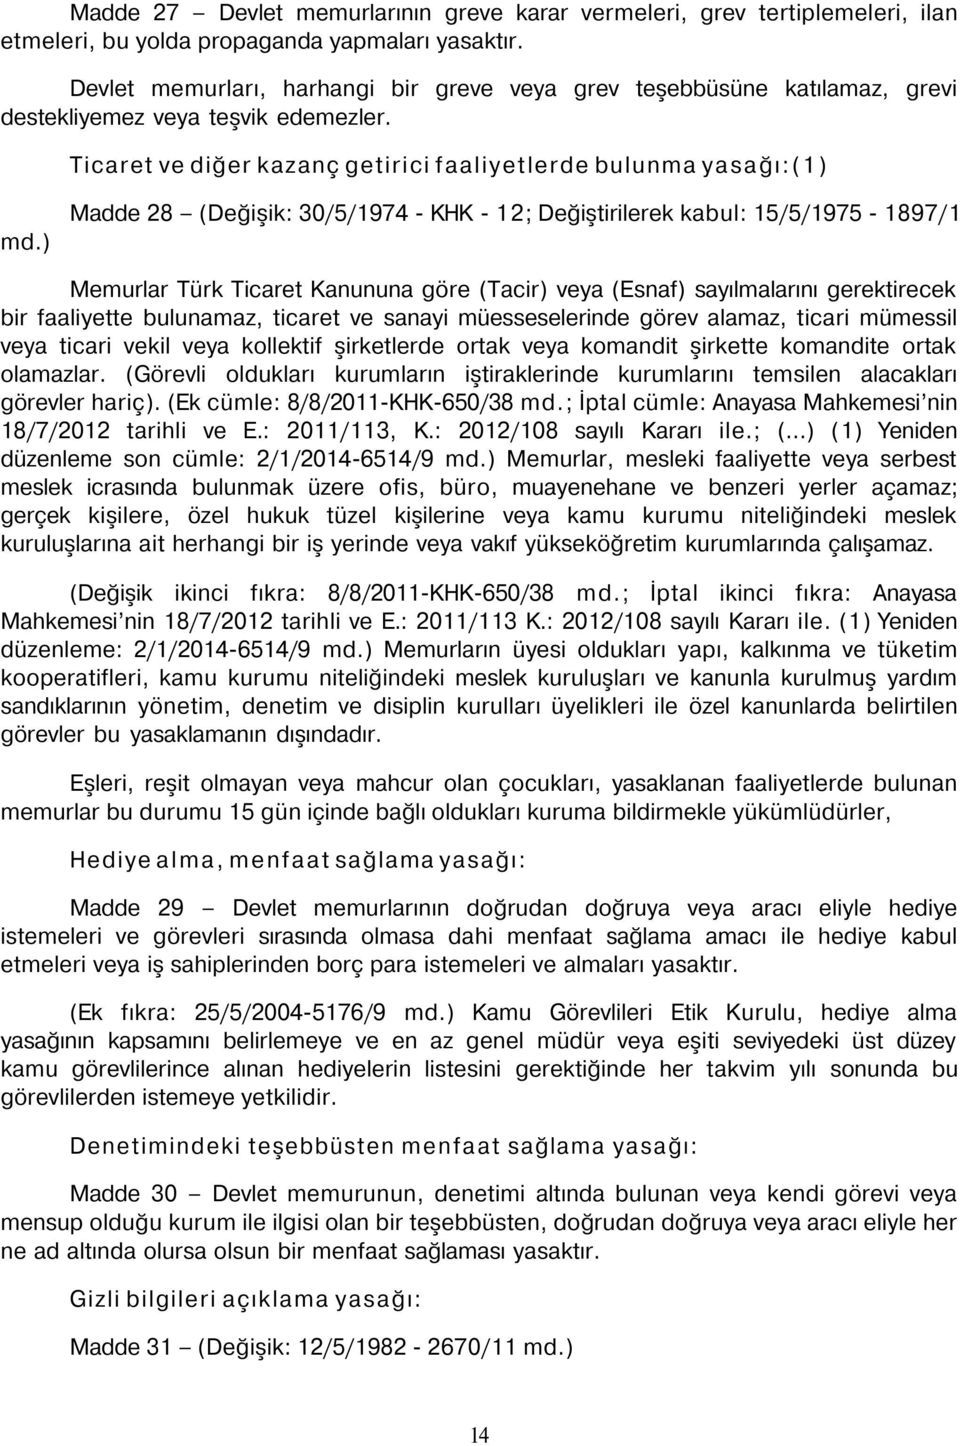 ) Madde 28 (Değişik: 30/5/1974 - KHK - 12; Değiştirilerek kabul: 15/5/1975-1897/1 Memurlar Türk Ticaret Kanununa göre (Tacir) veya (Esnaf) sayılmalarını gerektirecek bir faaliyette bulunamaz, ticaret